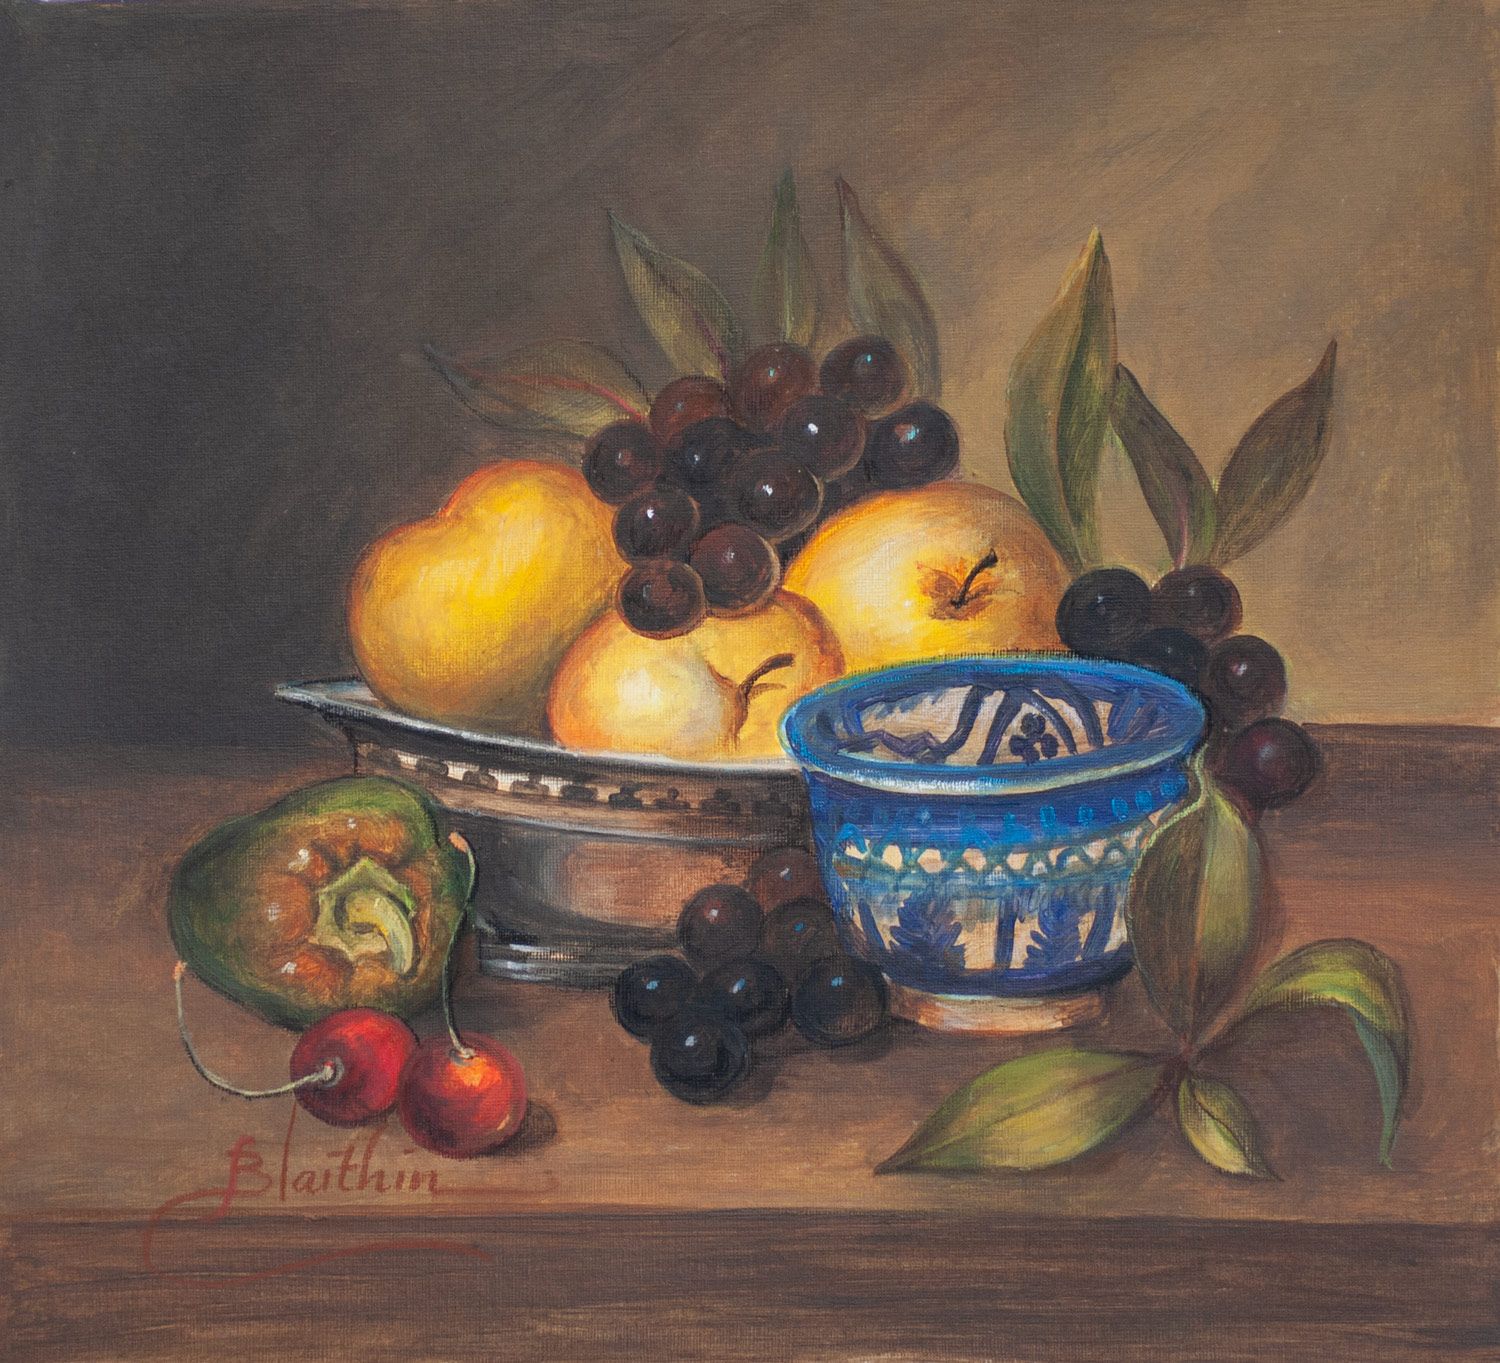 Blue China and Fruit Bowl by Blaithin O'Ciobhain